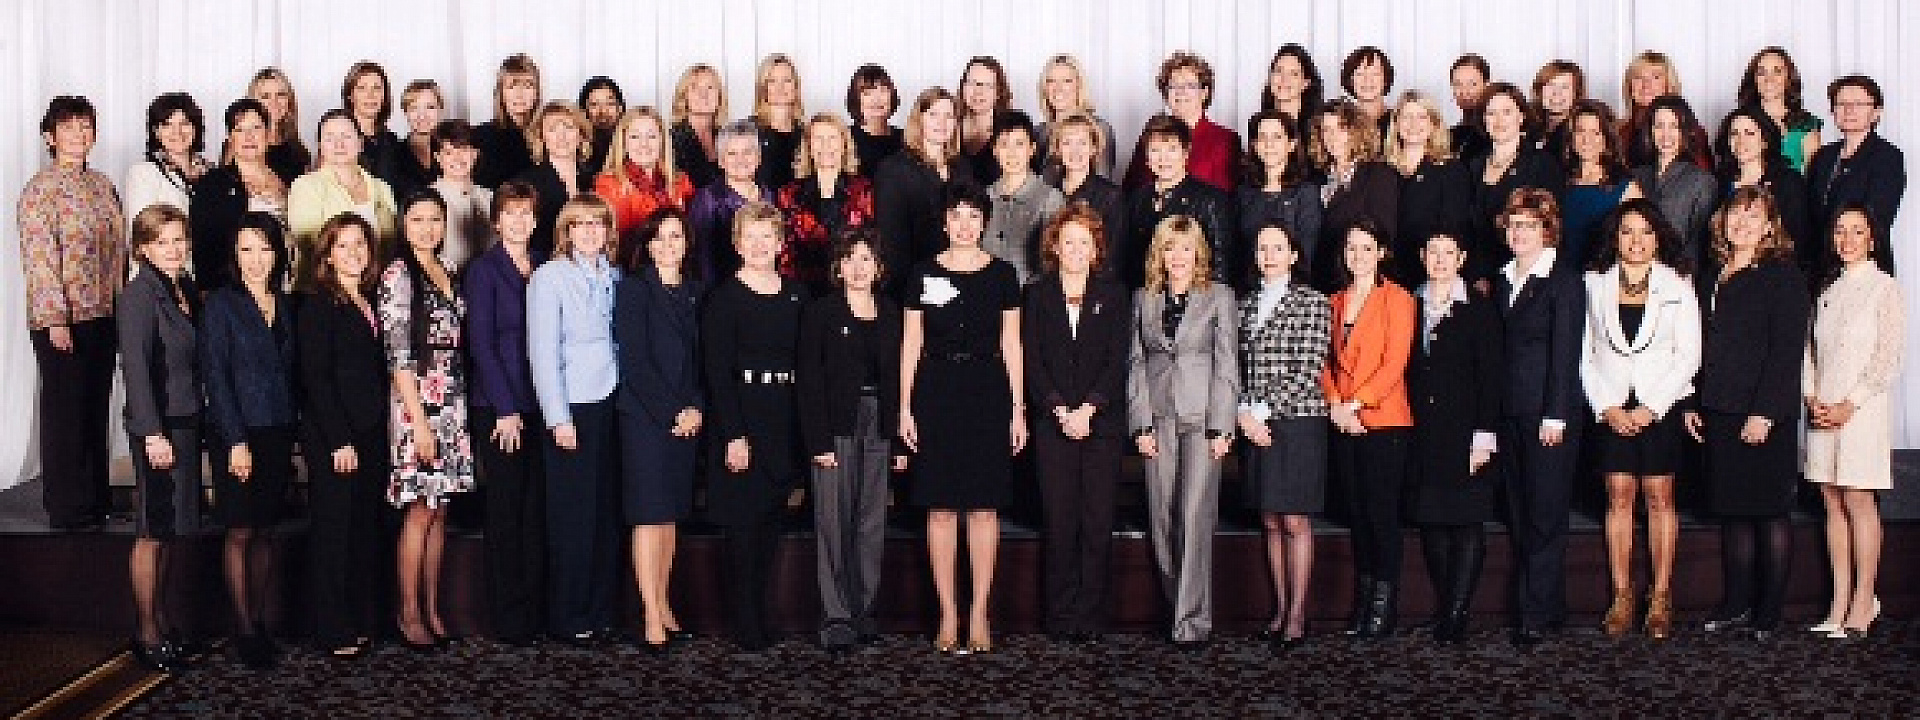 Les 100 femmes les plus influentes du Canada